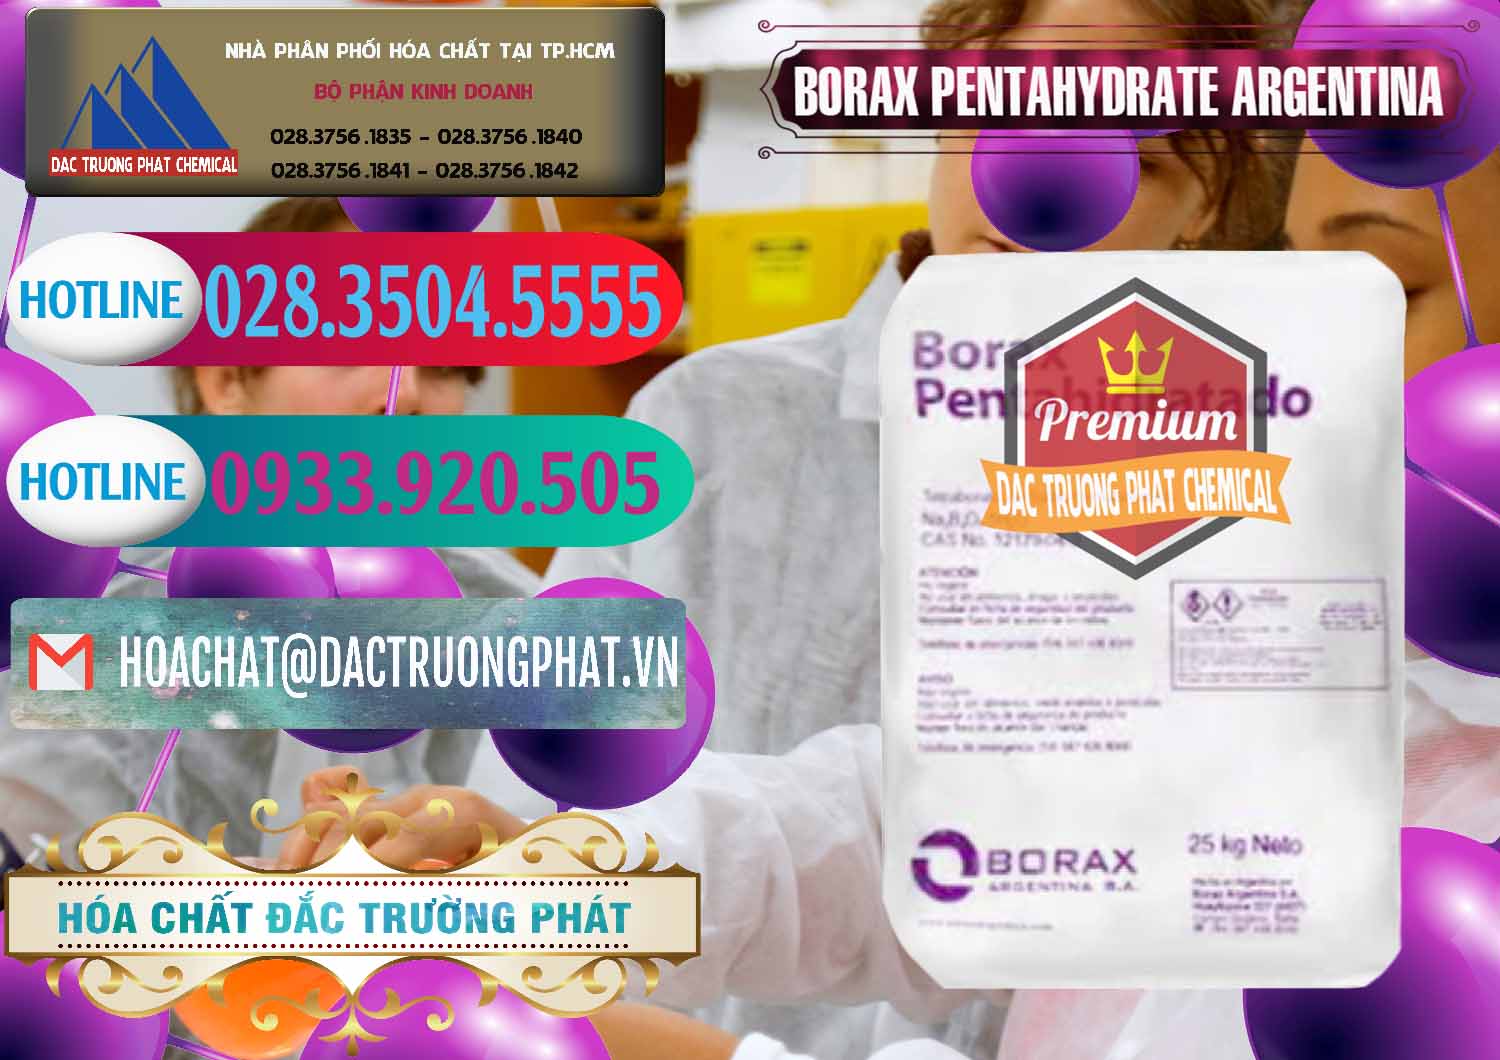 Phân phối & bán Borax Pentahydrate Argentina - 0447 - Công ty phân phối và cung cấp hóa chất tại TP.HCM - truongphat.vn